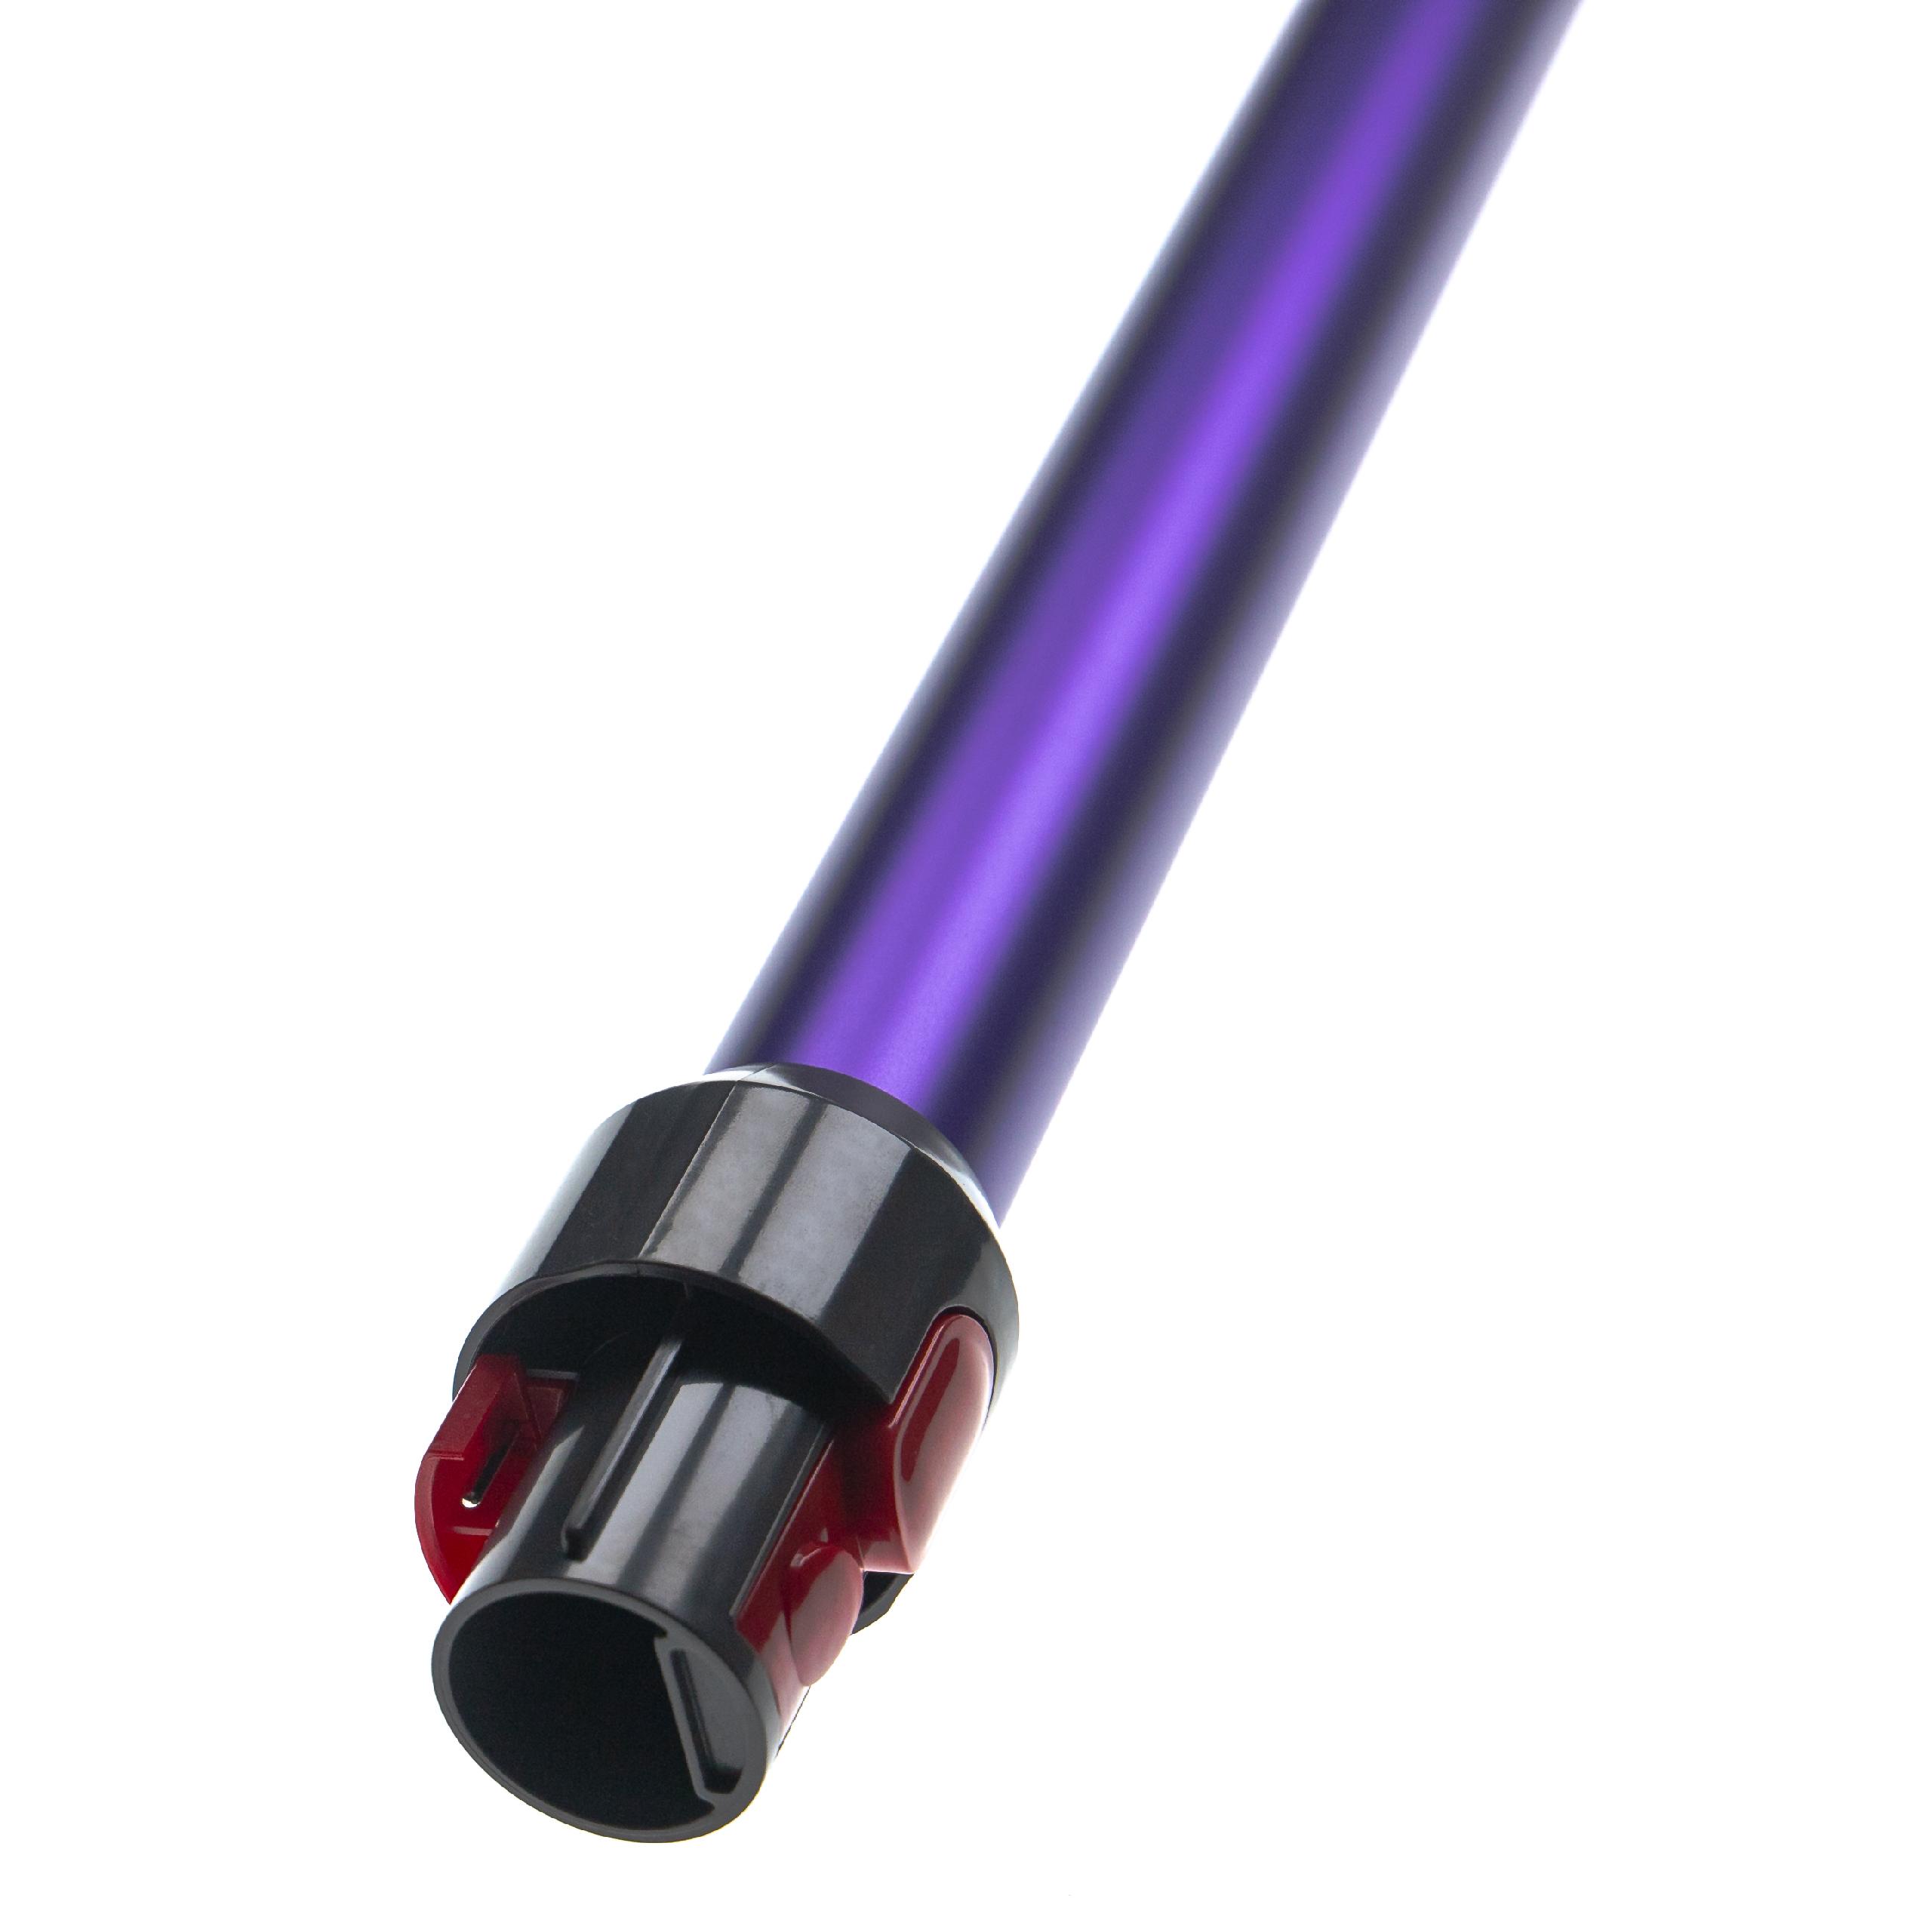 Tube for Dyson V10, V11, V15, V7, V8 vacuum cleaner - Length: 74, purple